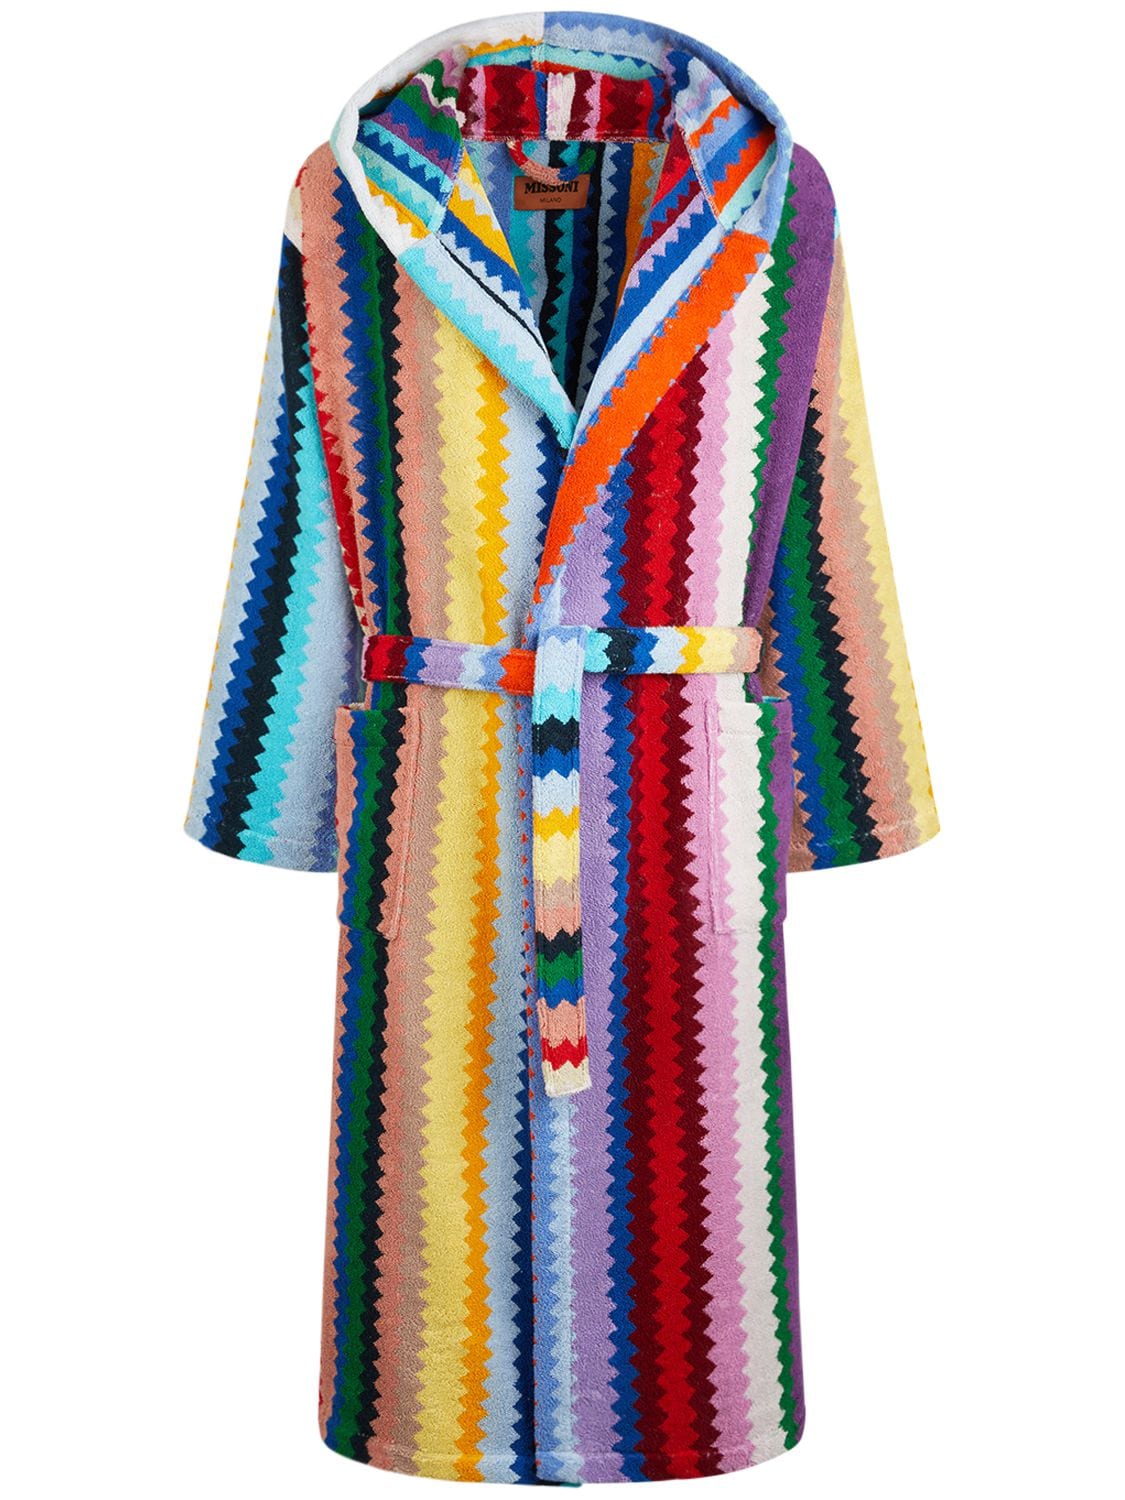 Missoni Home Collection Cecil连帽浴袍 In Multicolor